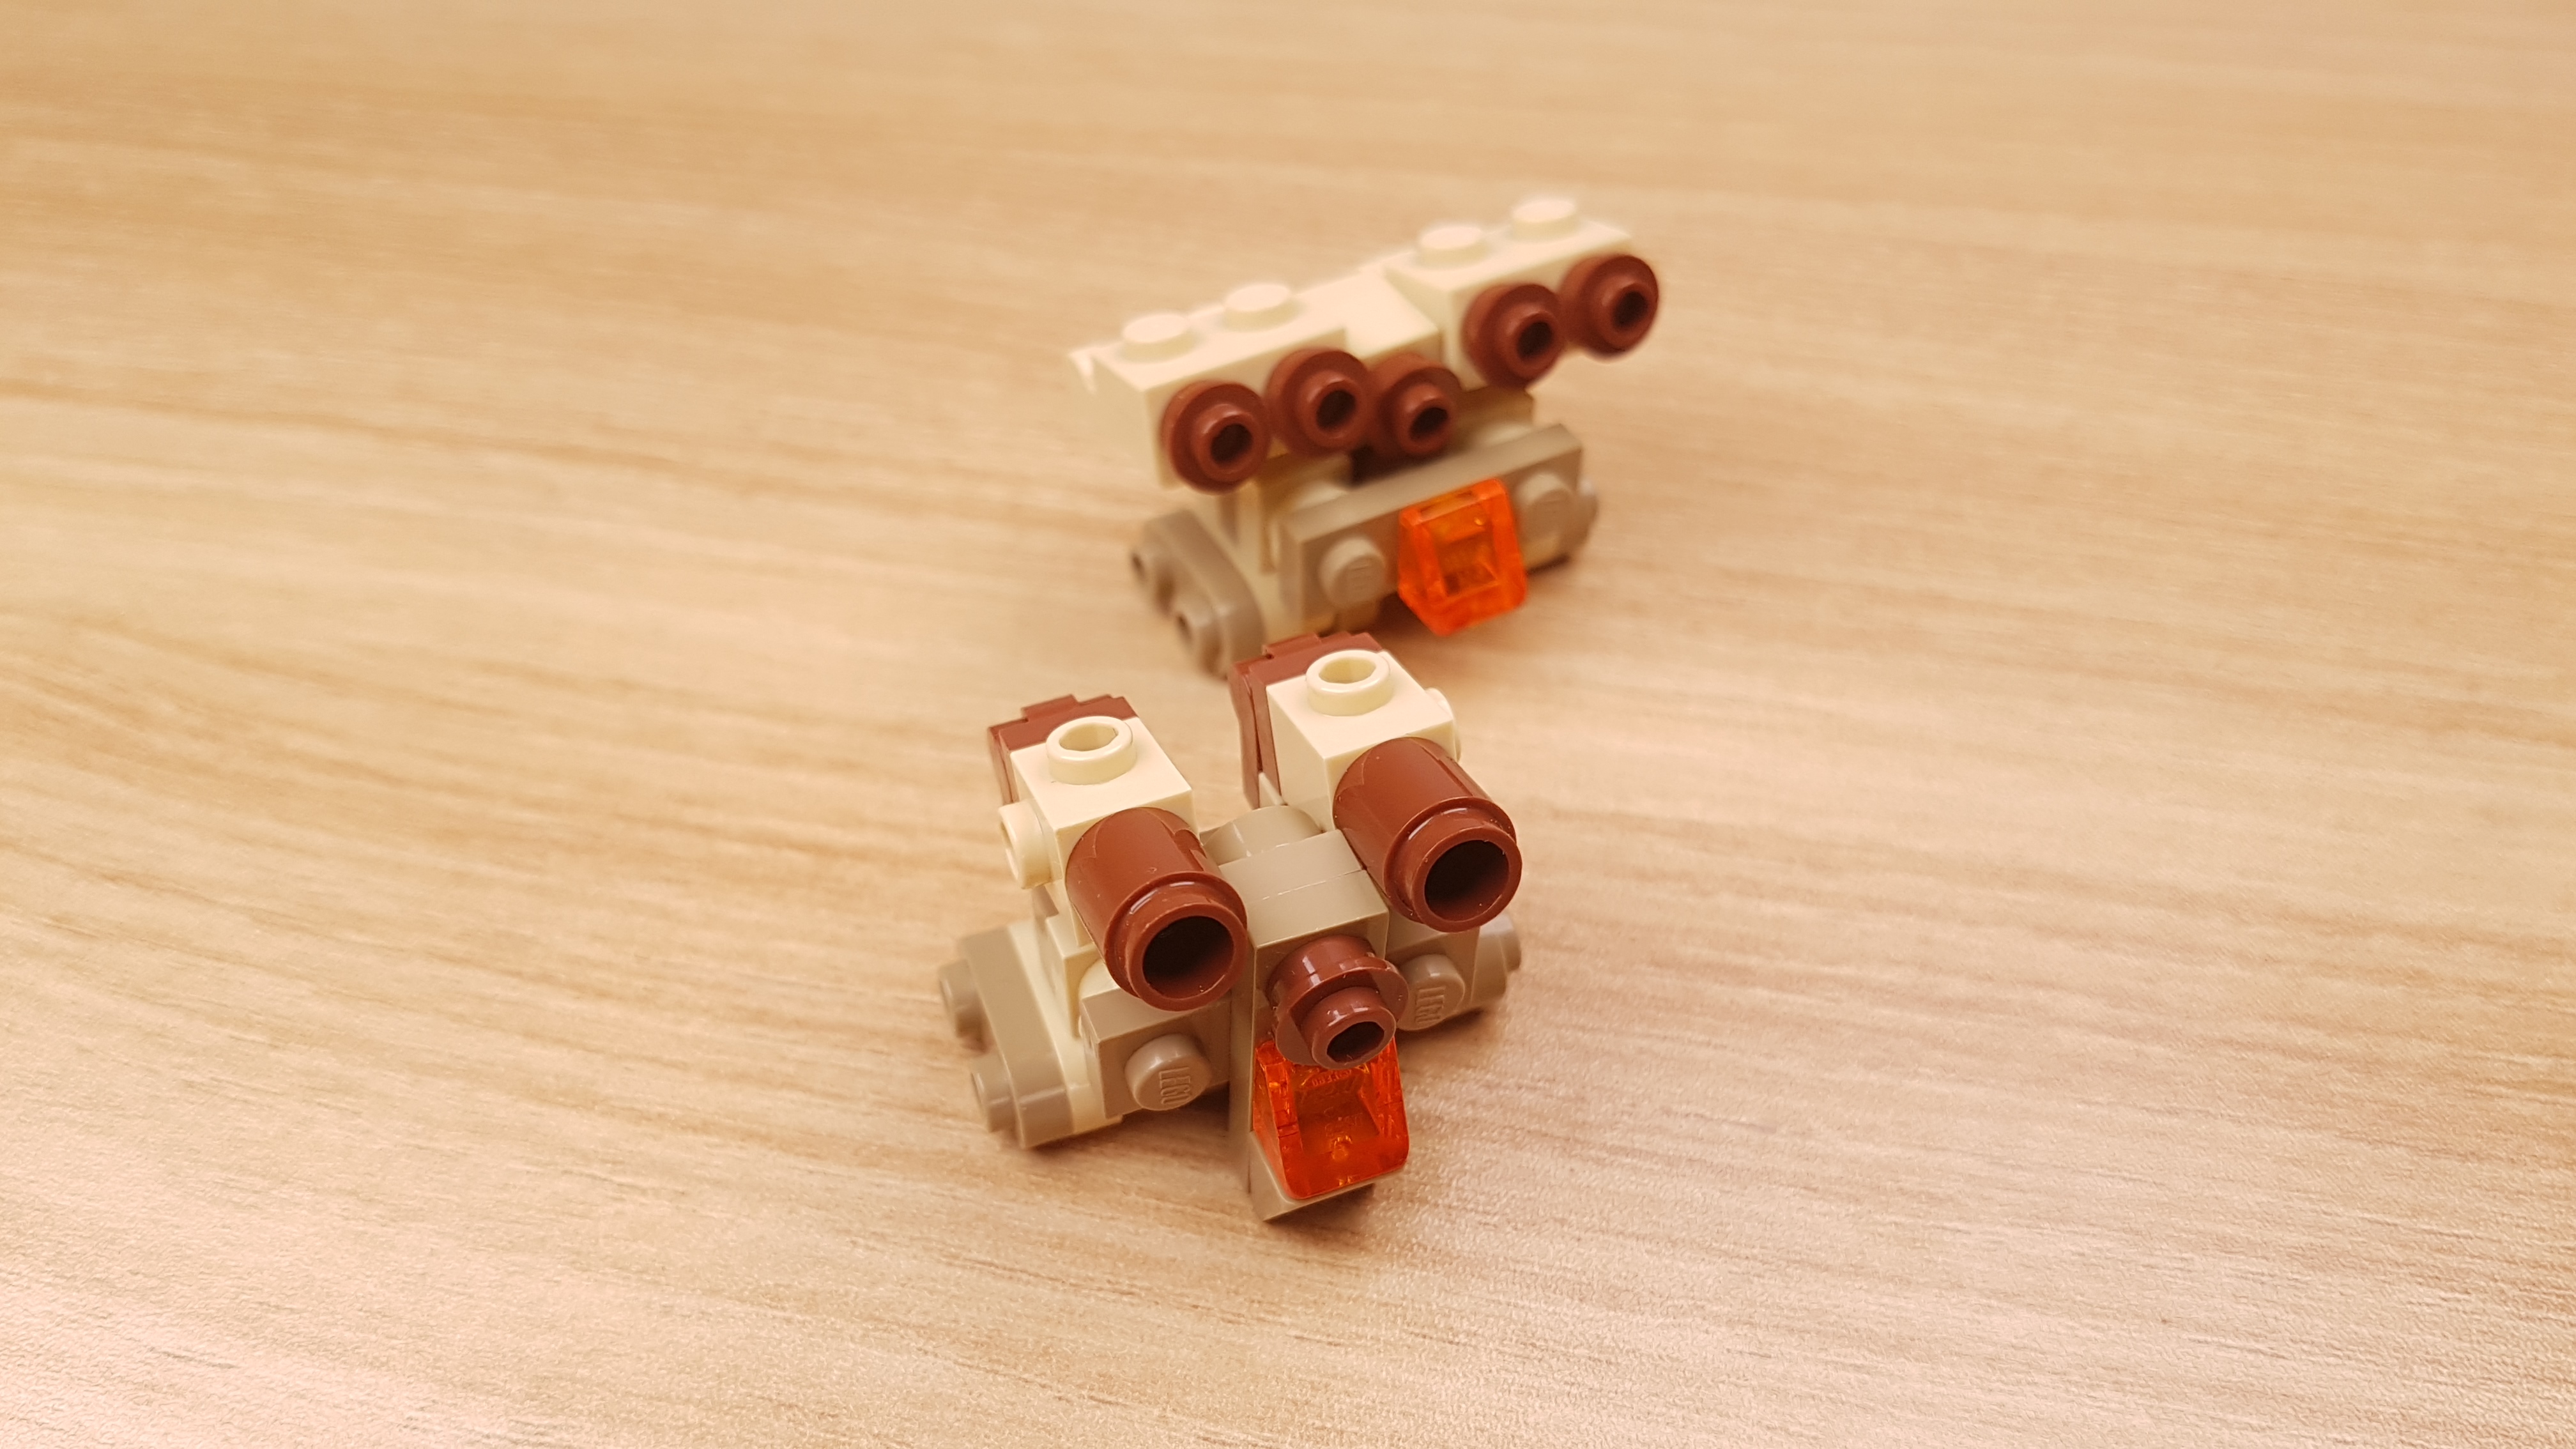 砂漠作戦用で開発した2段合体ミニレゴロボ - 「タン・ボット」
 3 - 変身,変身ロボ,レゴ変身ロボ